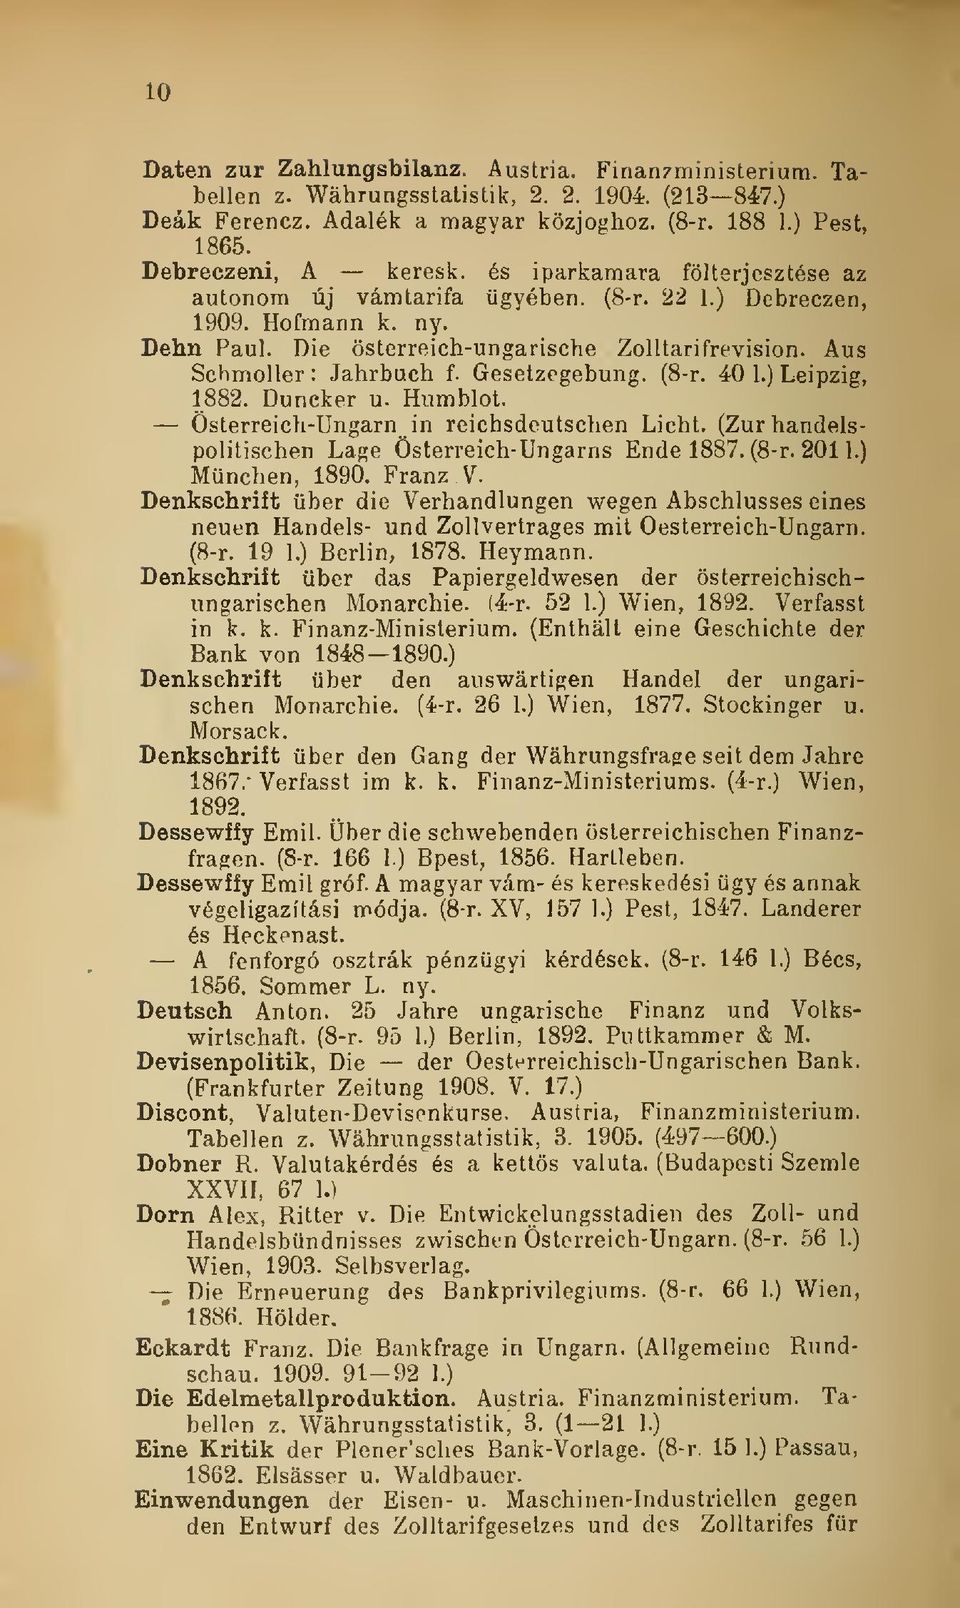 Gesetzegebung. (8-r. 40 1.) Leipzig, 1882. Duncker u. Humblot. Österreich-Ungarn in reichsdeutschen Licht. (Zurhandelspolitischen Lage Österreich-Ungarns Ende 1887. (8-r. 201 1.) München, 1890.